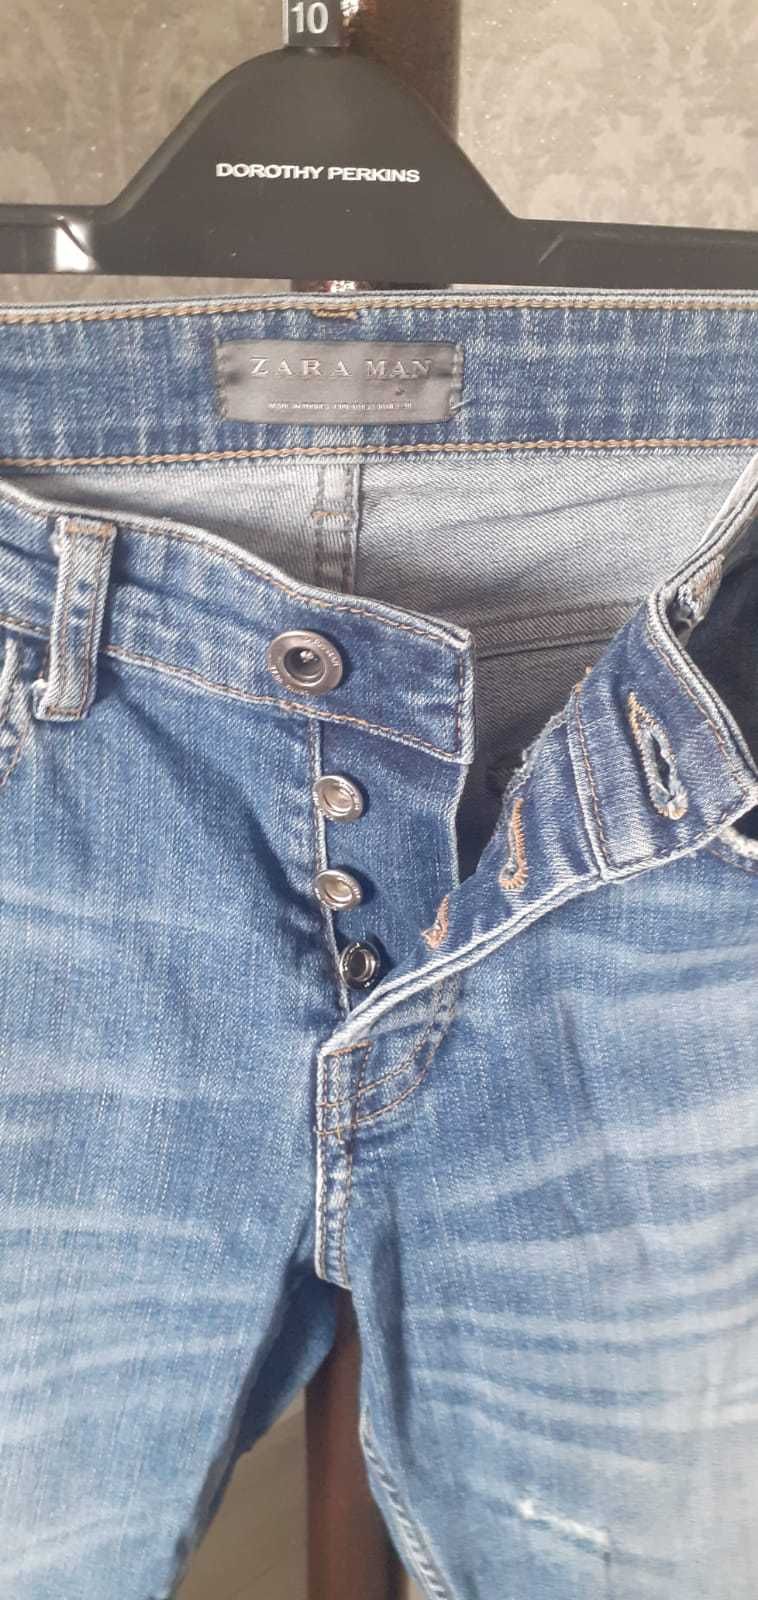 мужские джинсы ZARA на 46 размер производства Турции